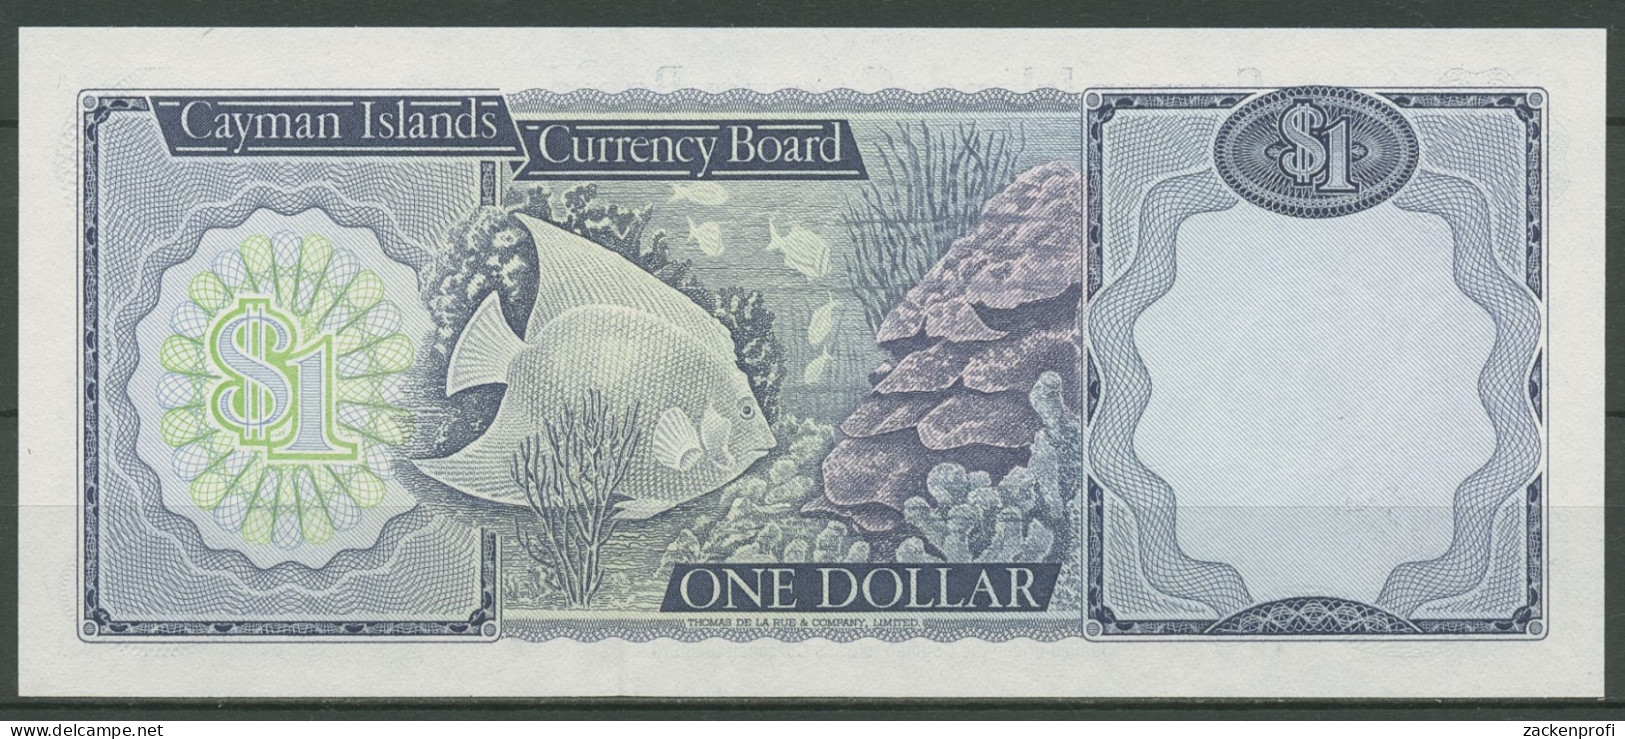 Cayman Islands 1 Dollar 1974, KM 5 E Kassenfrisch (K440) - Iles Cayman